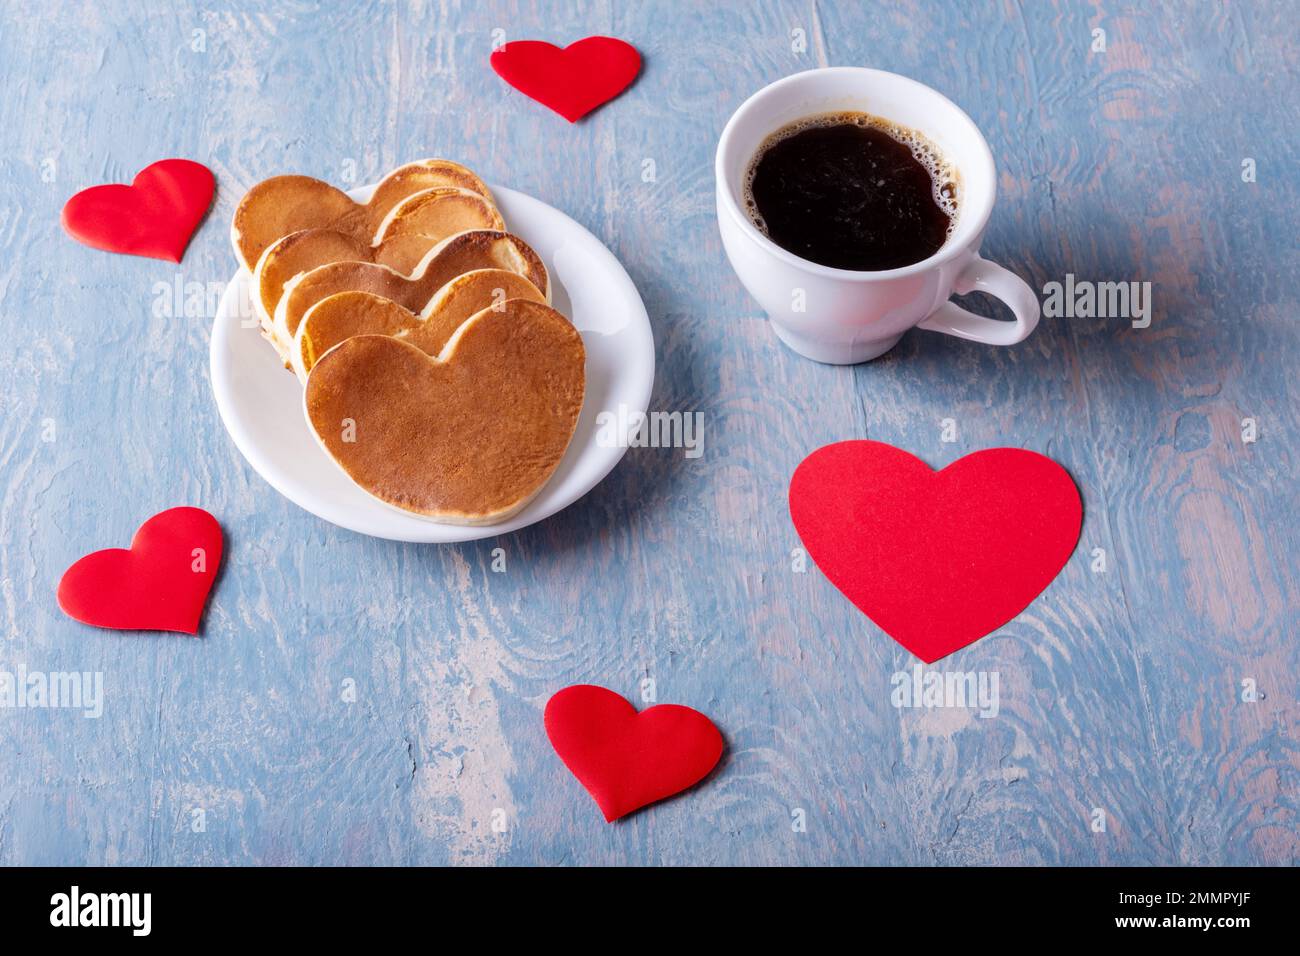 Hausgemachte Pfannkuchen in Form eines Herzens auf einem weißen Teller, eine Tasse mit Kaffee oder Kakao auf einem blauen, stilvollen Holzhintergrund mit Herzen. Frühstück für Stockfoto